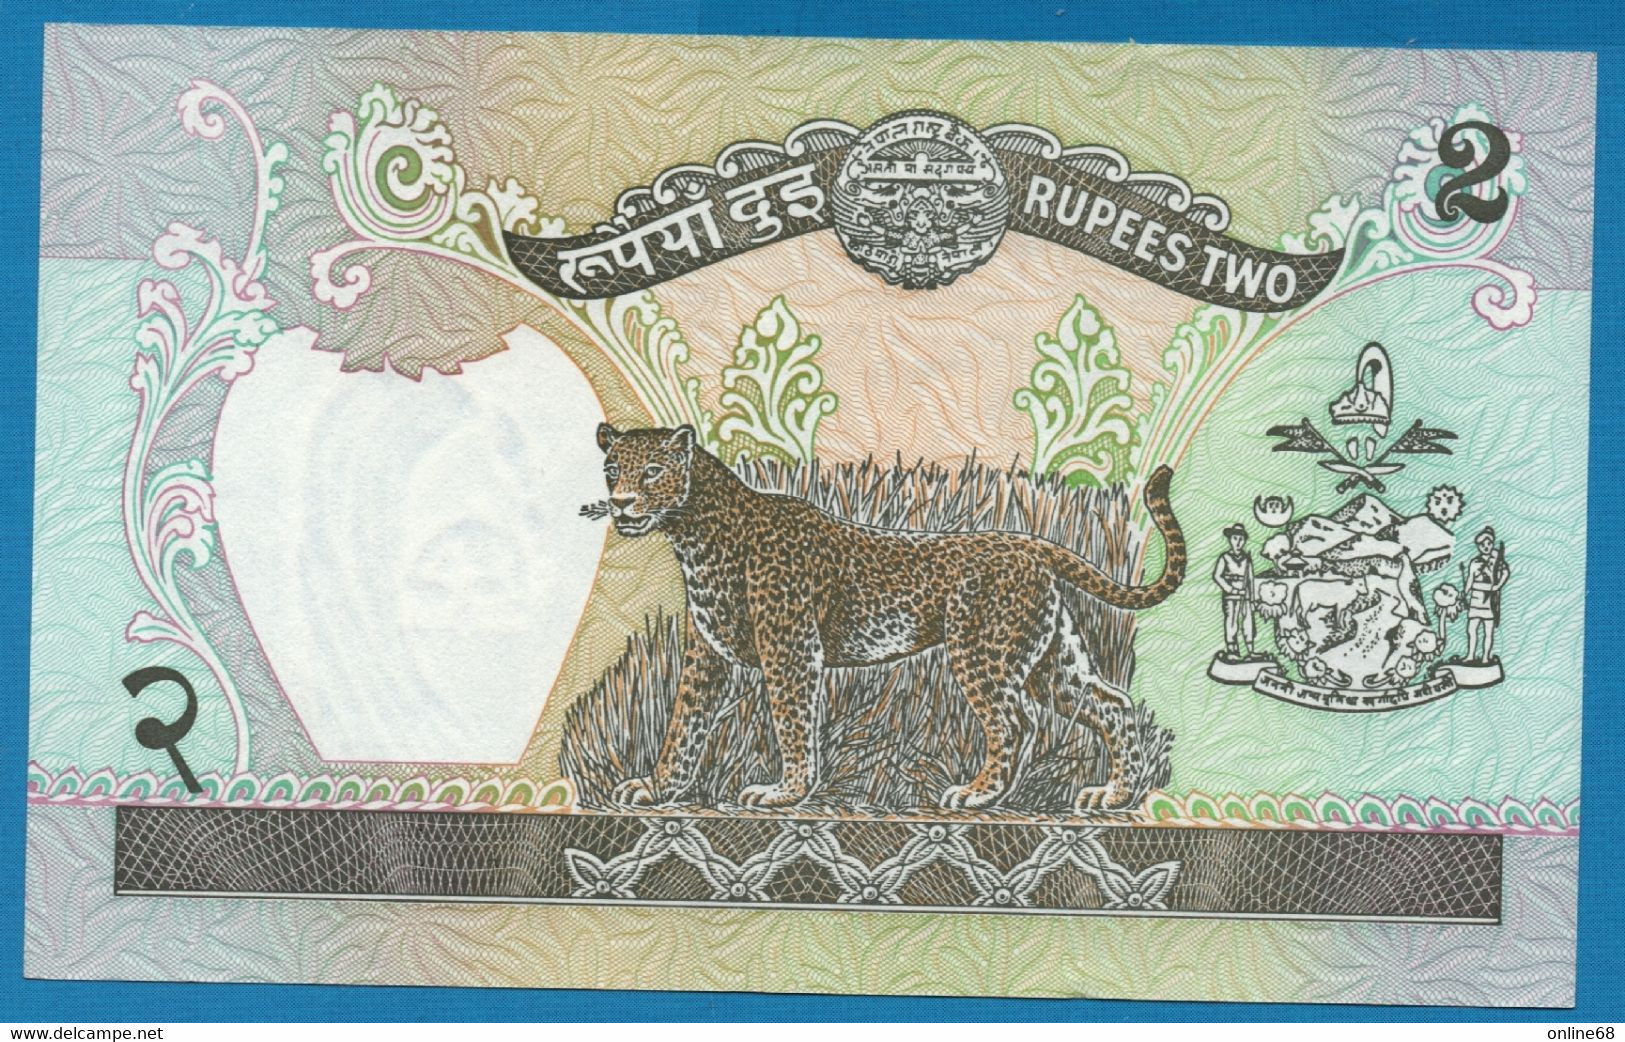 NEPAL 2 RUPEES (1985-1990) P# 29c King Birendra Bir Bikram Signature: Ganesh Bahadur Thapa - Népal